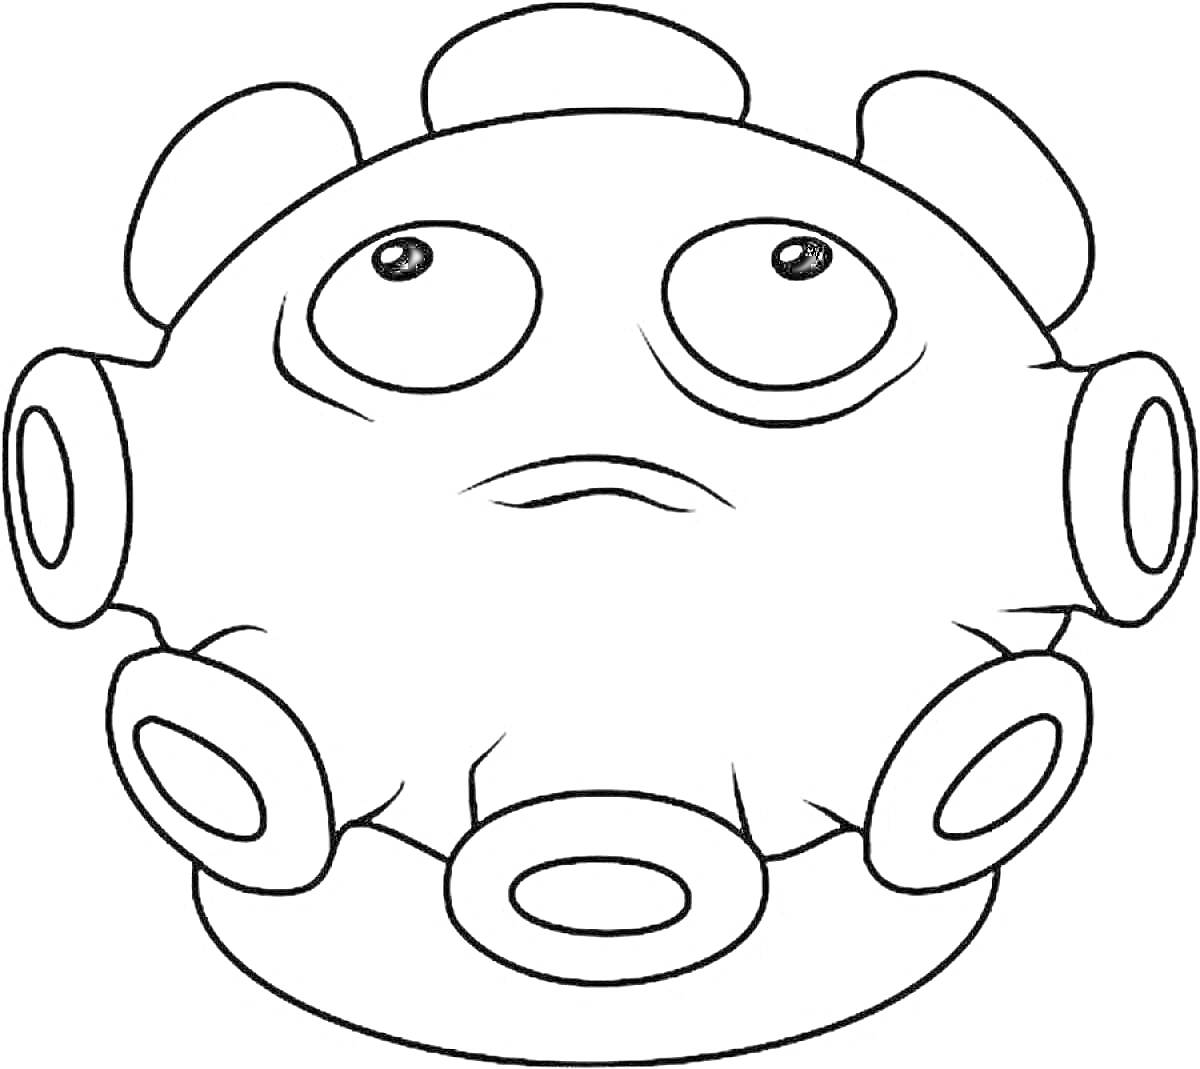 Раскраска Гриб-пуховик, персонаж из игры Plants vs Zombies